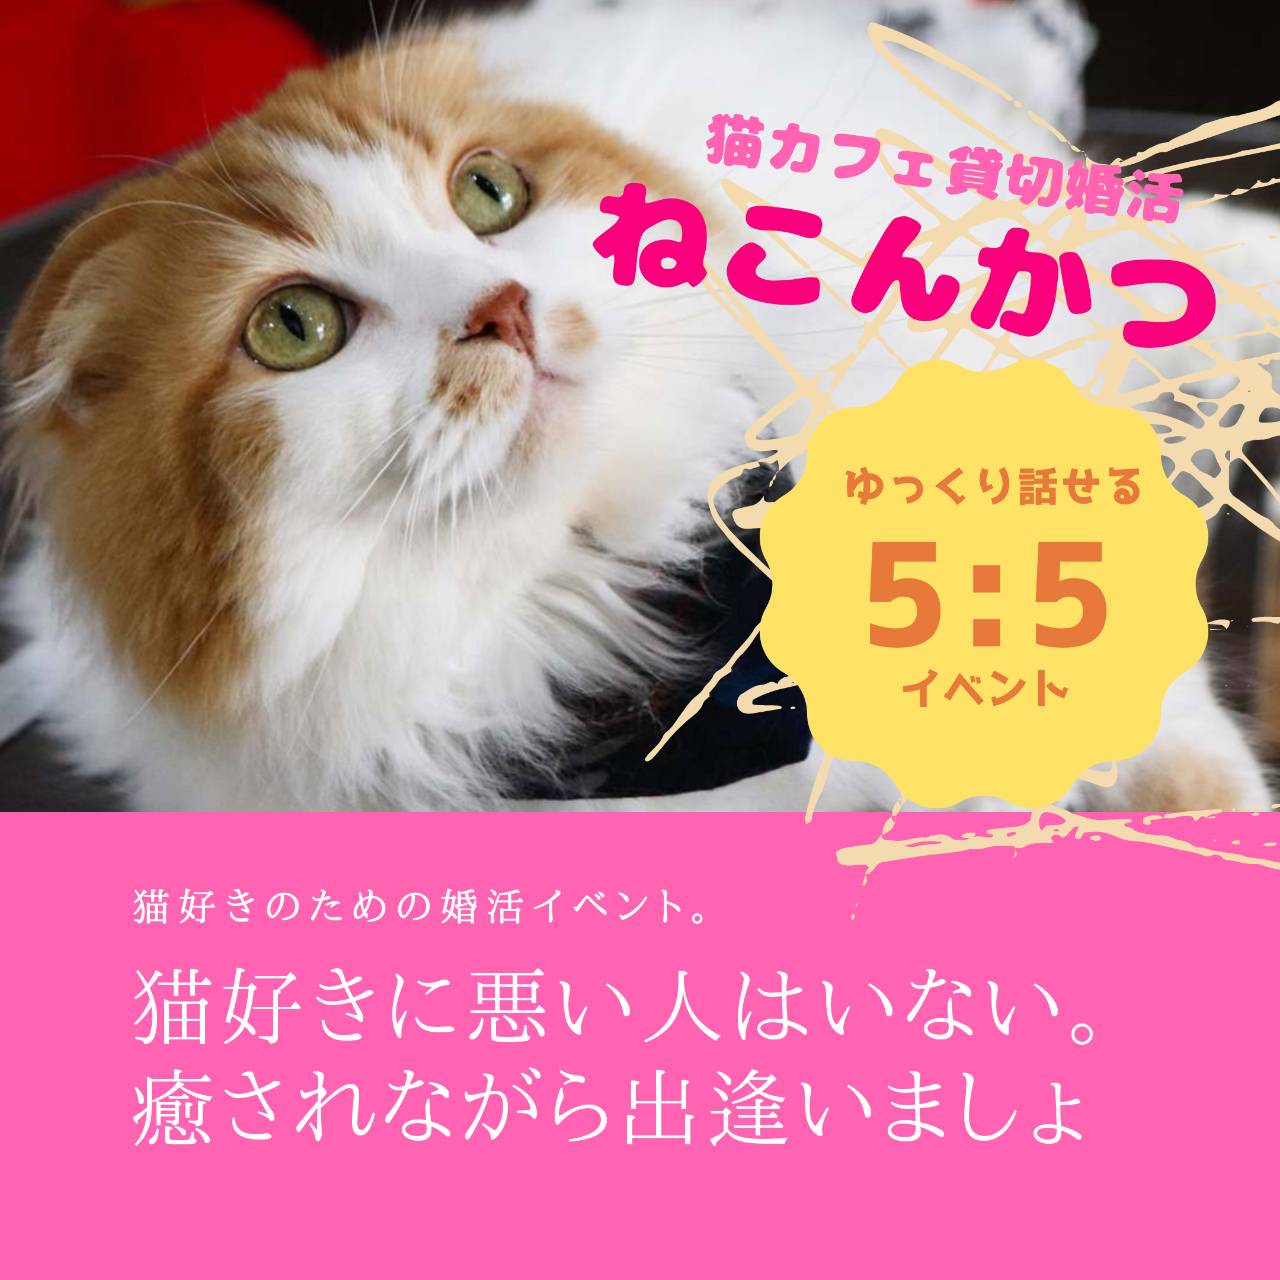 6 26 金 猫カフェ貸切婚活 ねこんかつ 月3 300円からの婚活 姫路周辺から神戸間で素敵なパートナーをお探しならプリムラへ